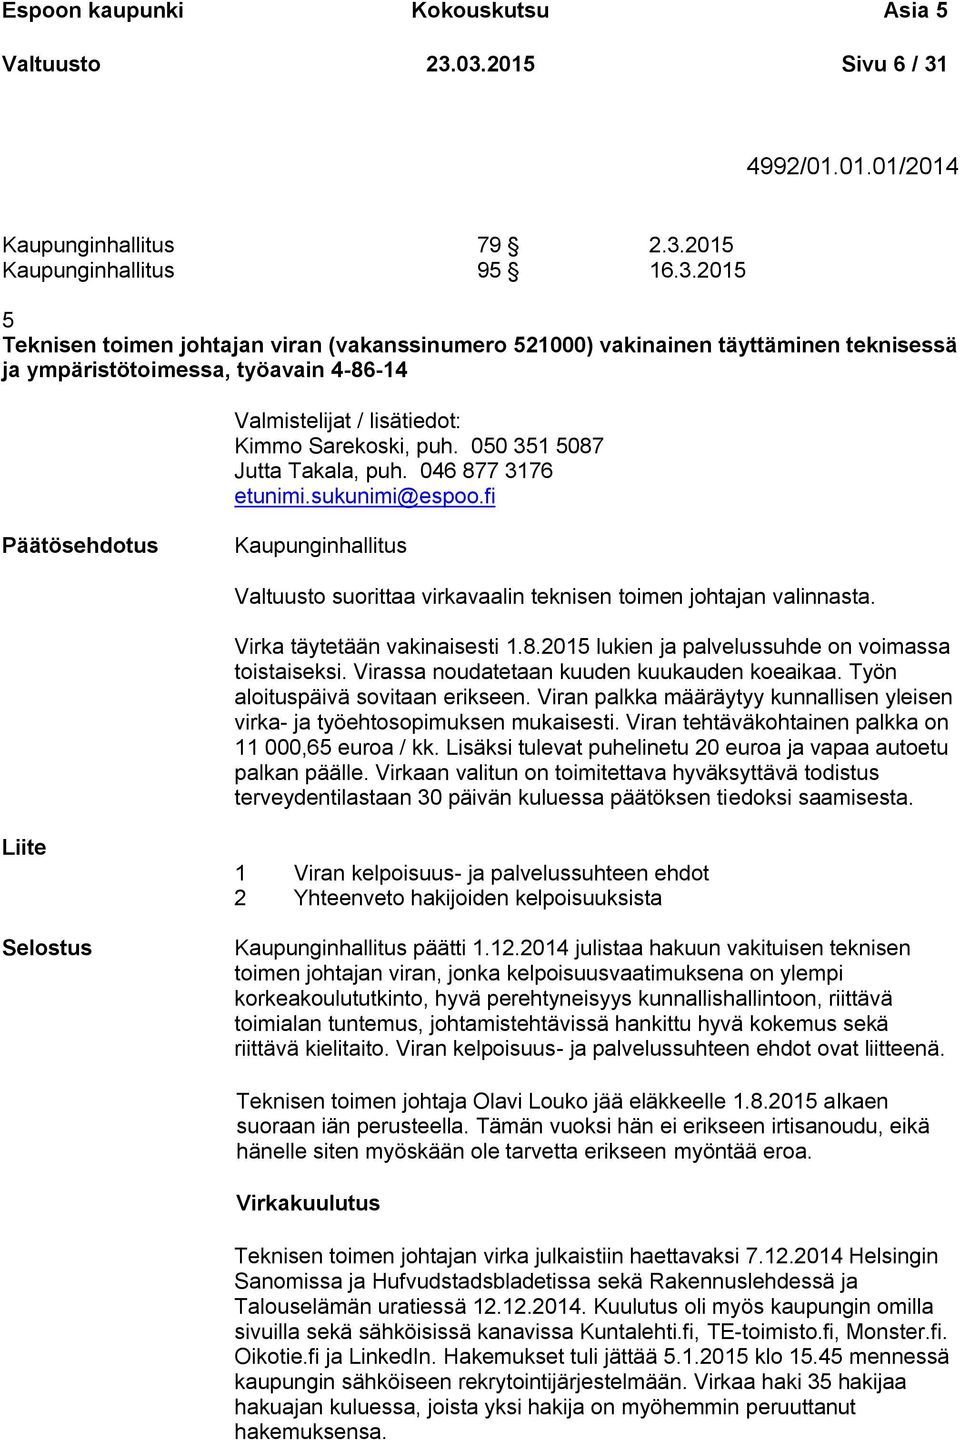 050 351 5087 Jutta Takala, puh. 046 877 3176 etunimi.sukunimi@espoo.fi Valtuusto suorittaa virkavaalin teknisen toimen johtajan valinnasta. Virka täytetään vakinaisesti 1.8.2015 lukien ja palvelussuhde on voimassa toistaiseksi.